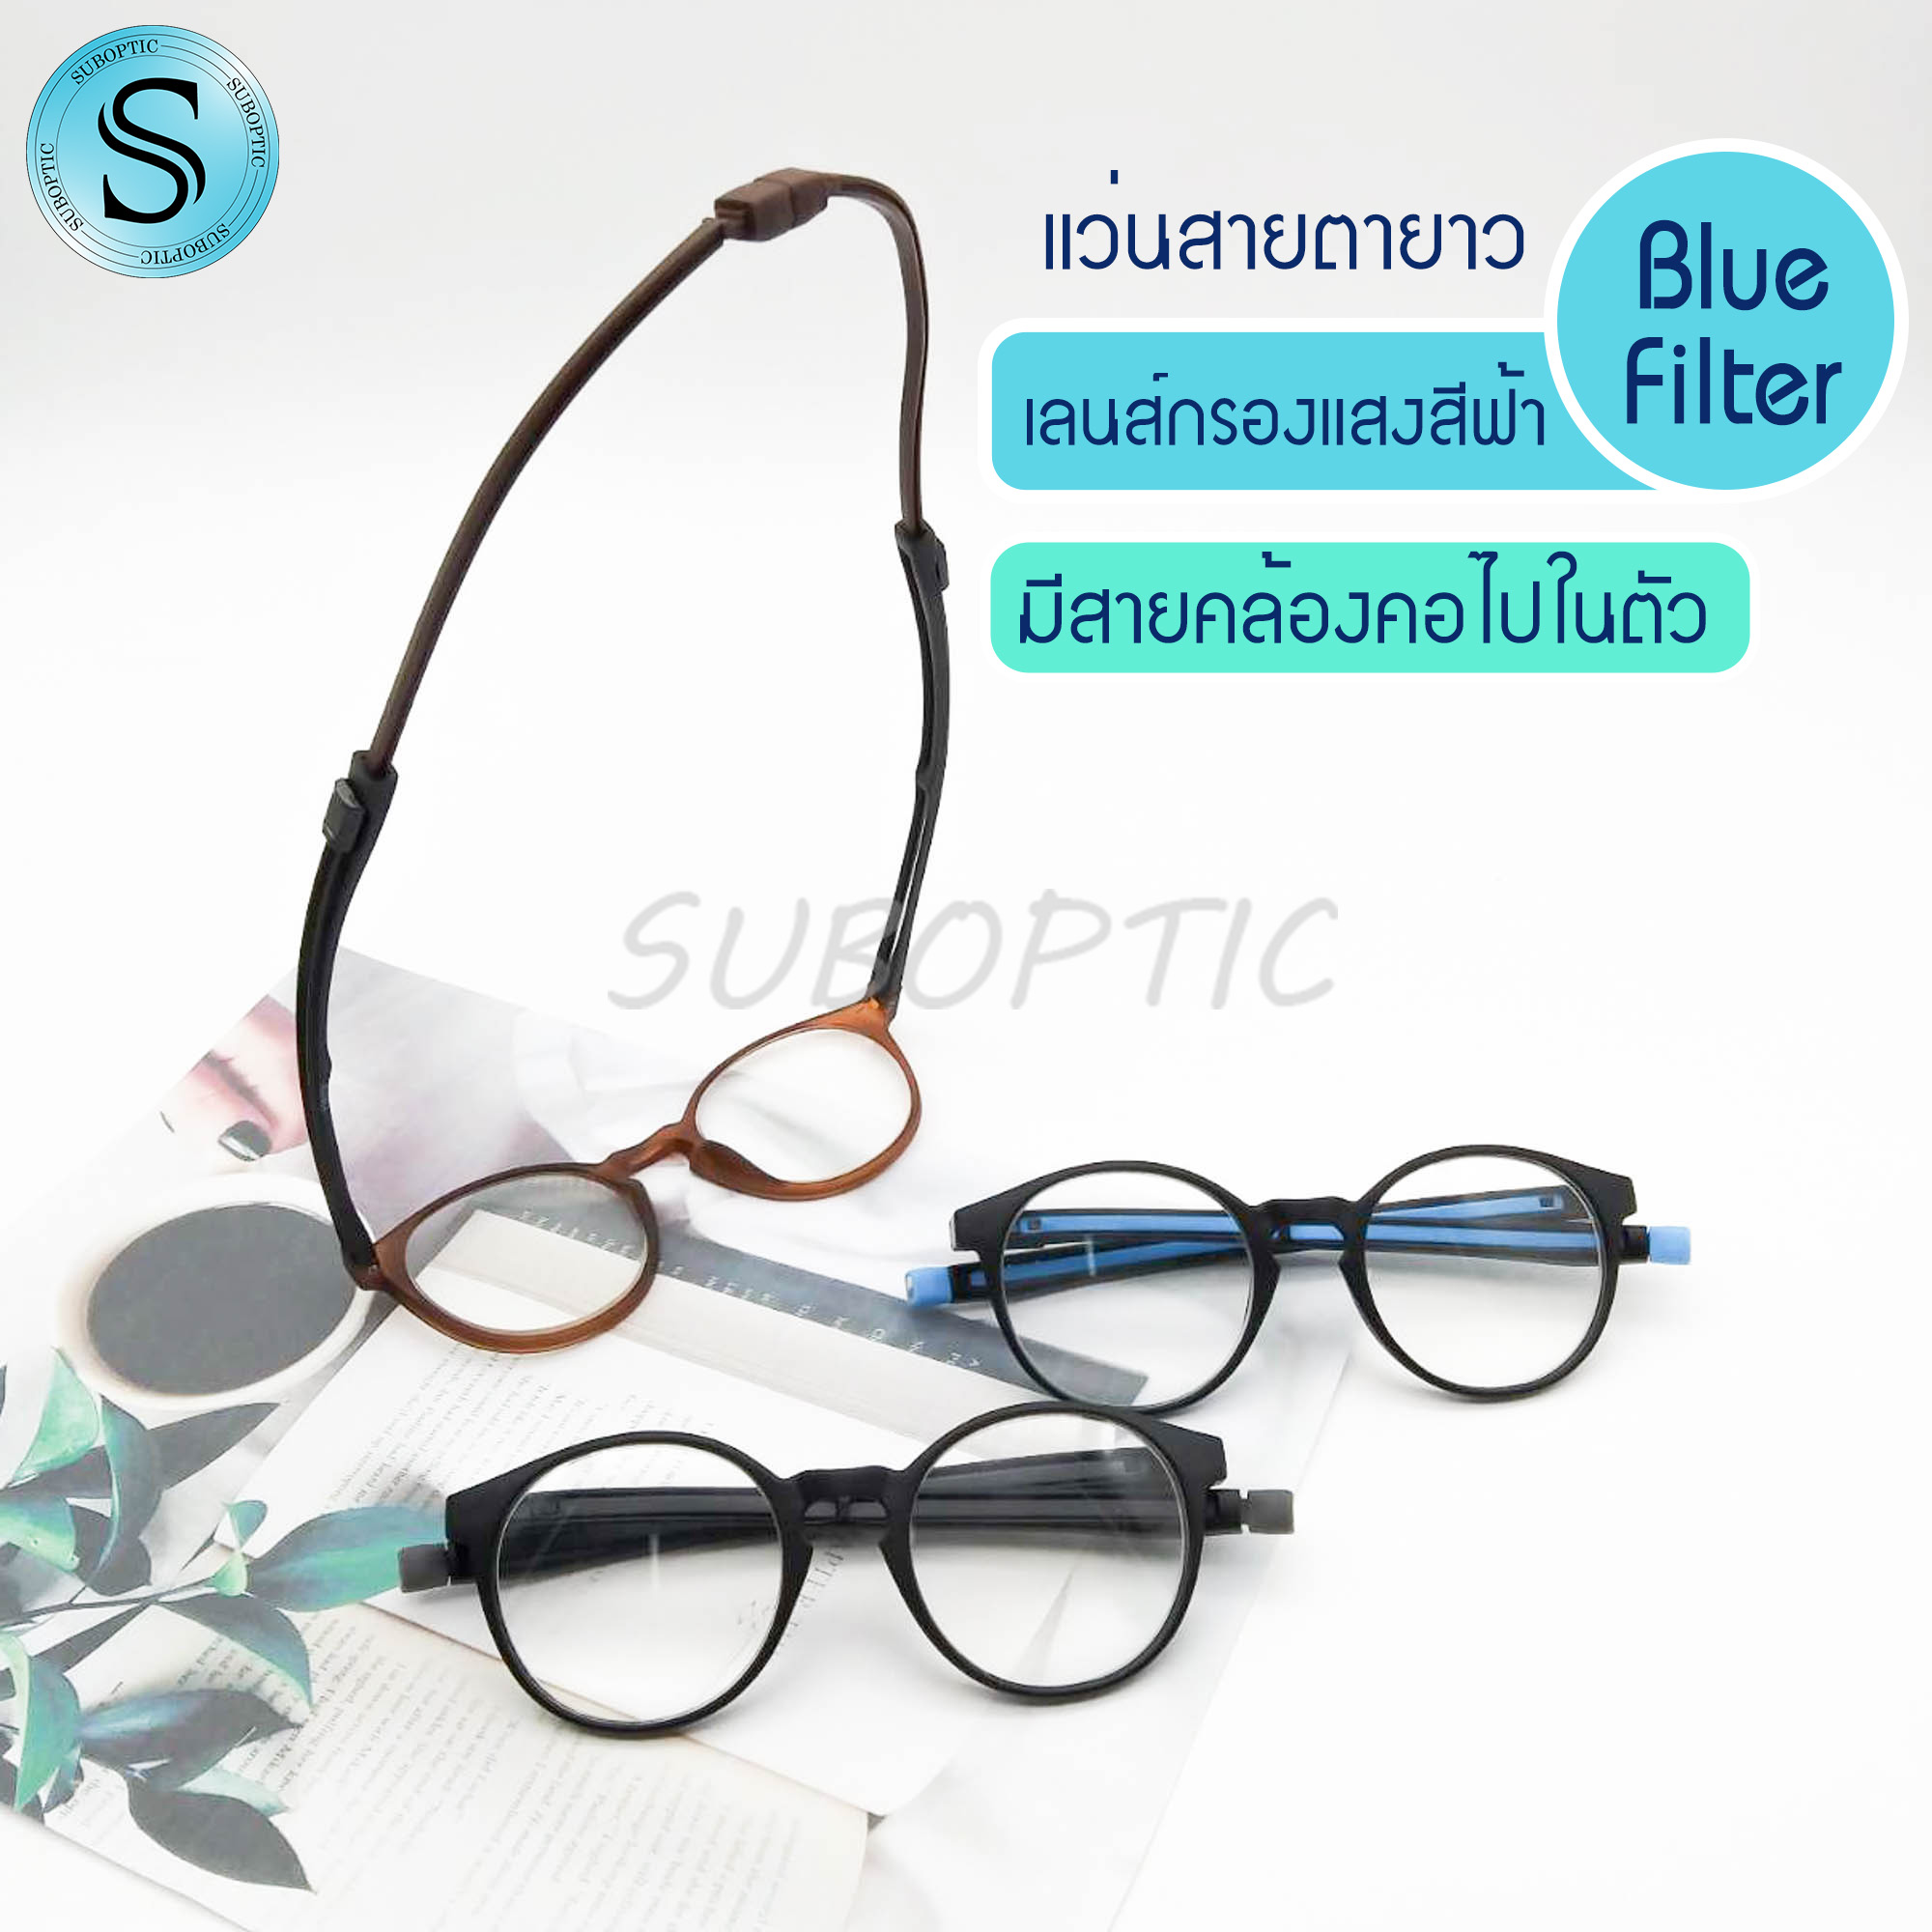 Suboptic แว่นสายตายาว มีสายคล้องคอ เลนส์Blue Filter กรองแสงสีฟ้า คุณภาพอย่างดี พร้อมผ้าเช็ดแว่นและถุงใส่แว่น